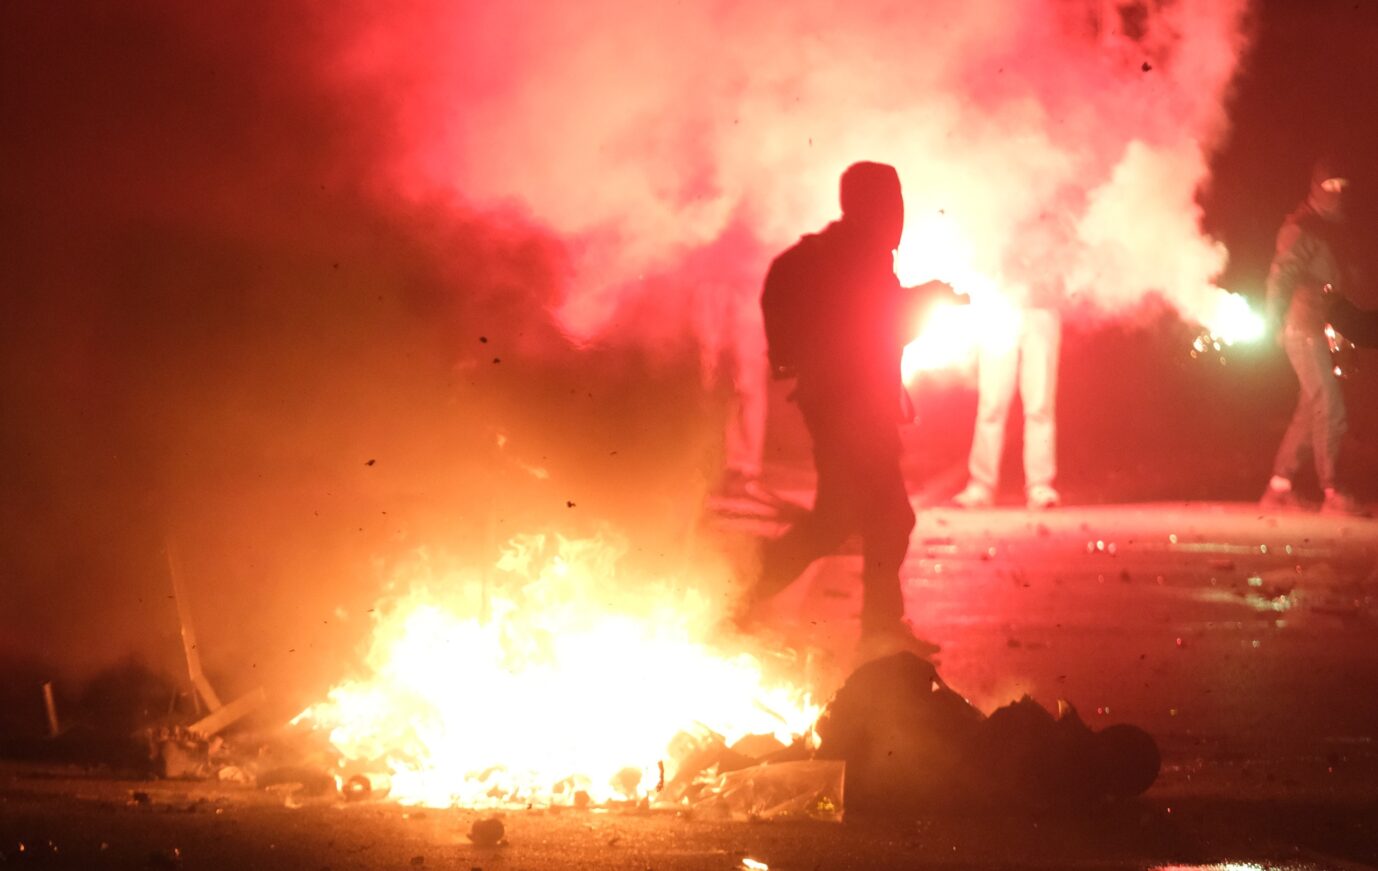 Silvester in Leipzig: Eine Person geht an einer brennenden Barrikade vorbei.